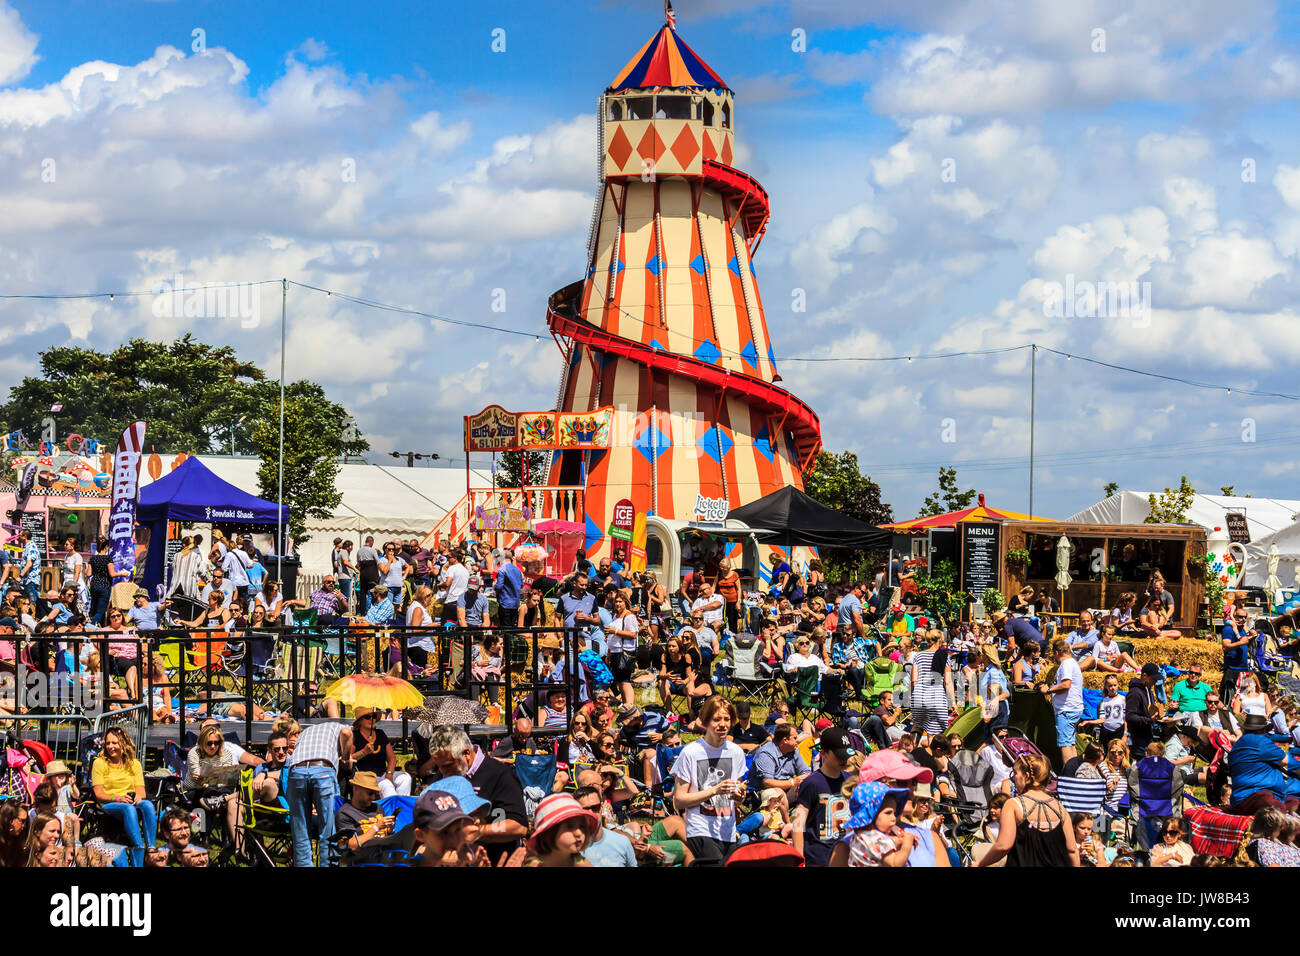 Rassemblement près de la foule des stands de nourriture et de divertissement, avec un traditionnel helter skelter spiral slide, Jimmy's Festival, Ipswich, Suffolk, UK Banque D'Images